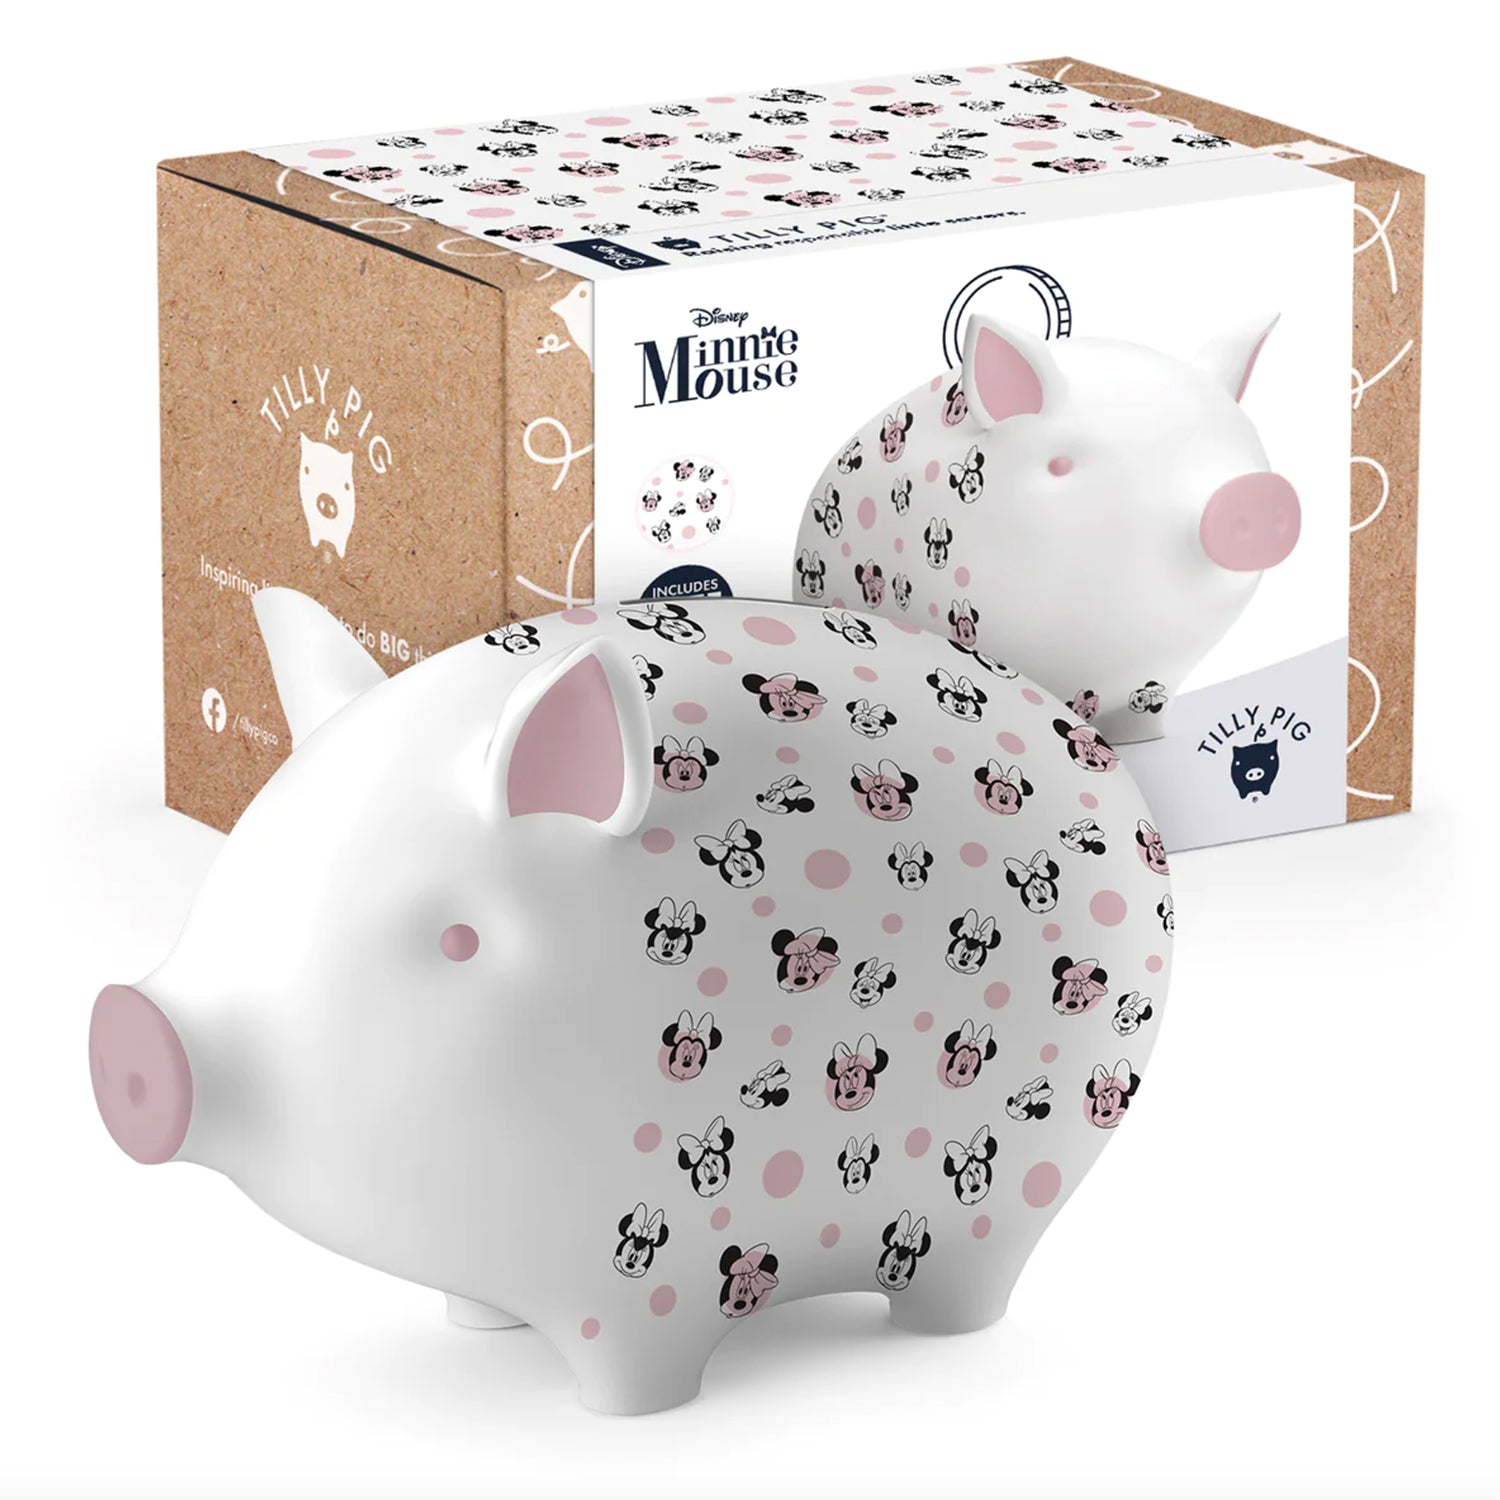 Disney's Minnie Mouse Piggy Bank